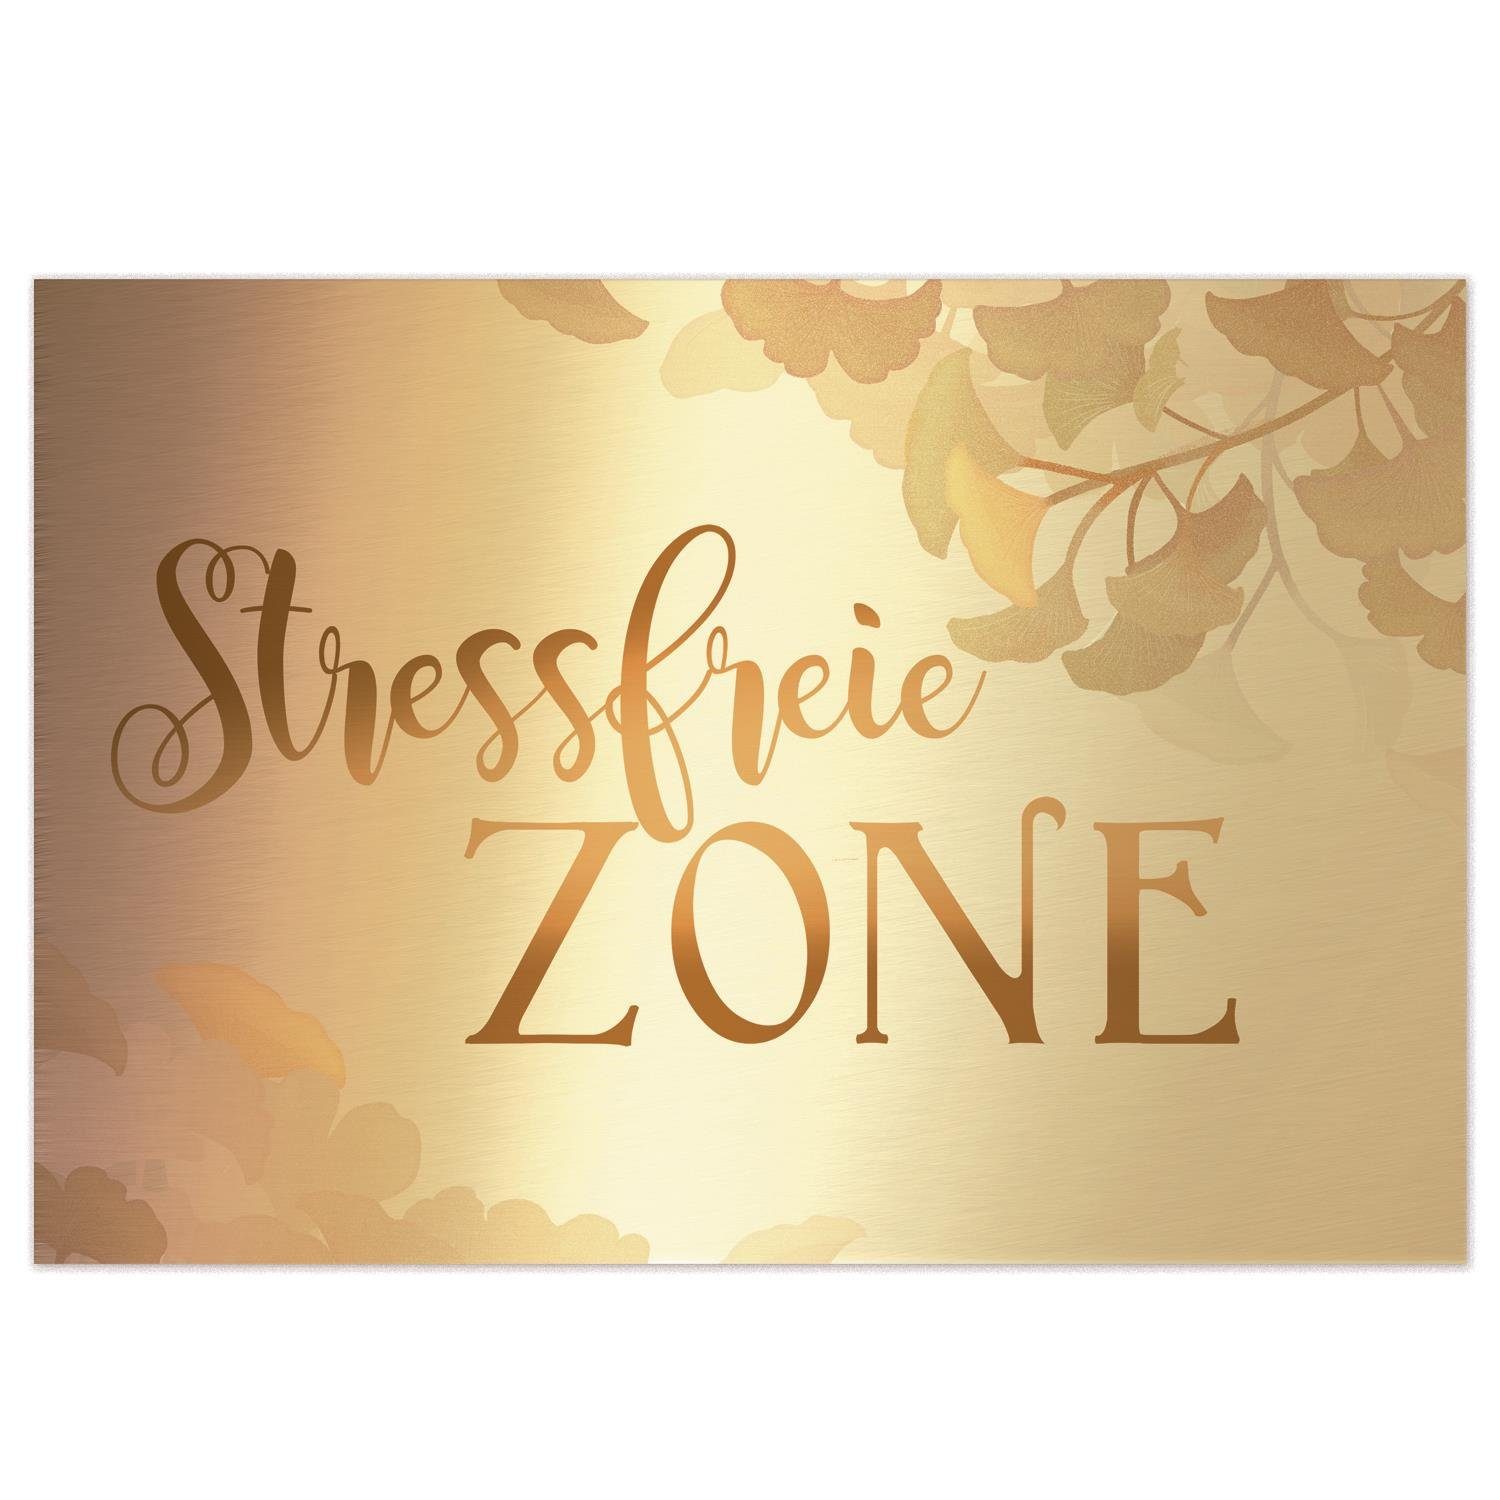 Logbuch-Verlag Wanddekoobjekt Wandbild Stressfreie Zone Ginkgo-Motiv gold mit